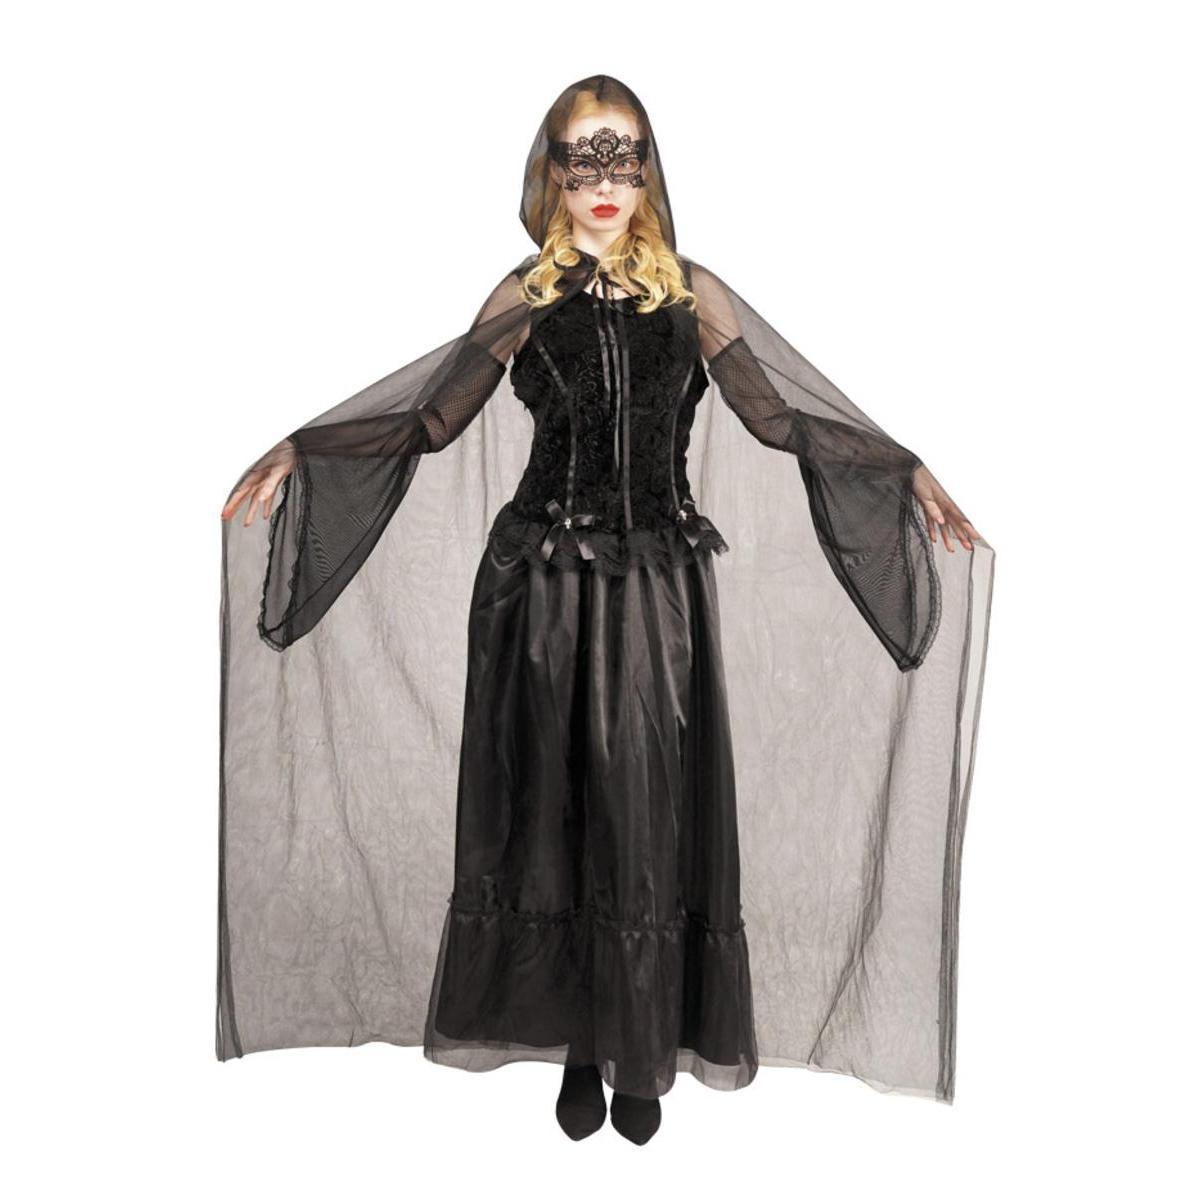 Costume de Veuve Noire - Taille adulte  - L 39 x H 2 x l 29 cm - Noir - PTIT CLOWN